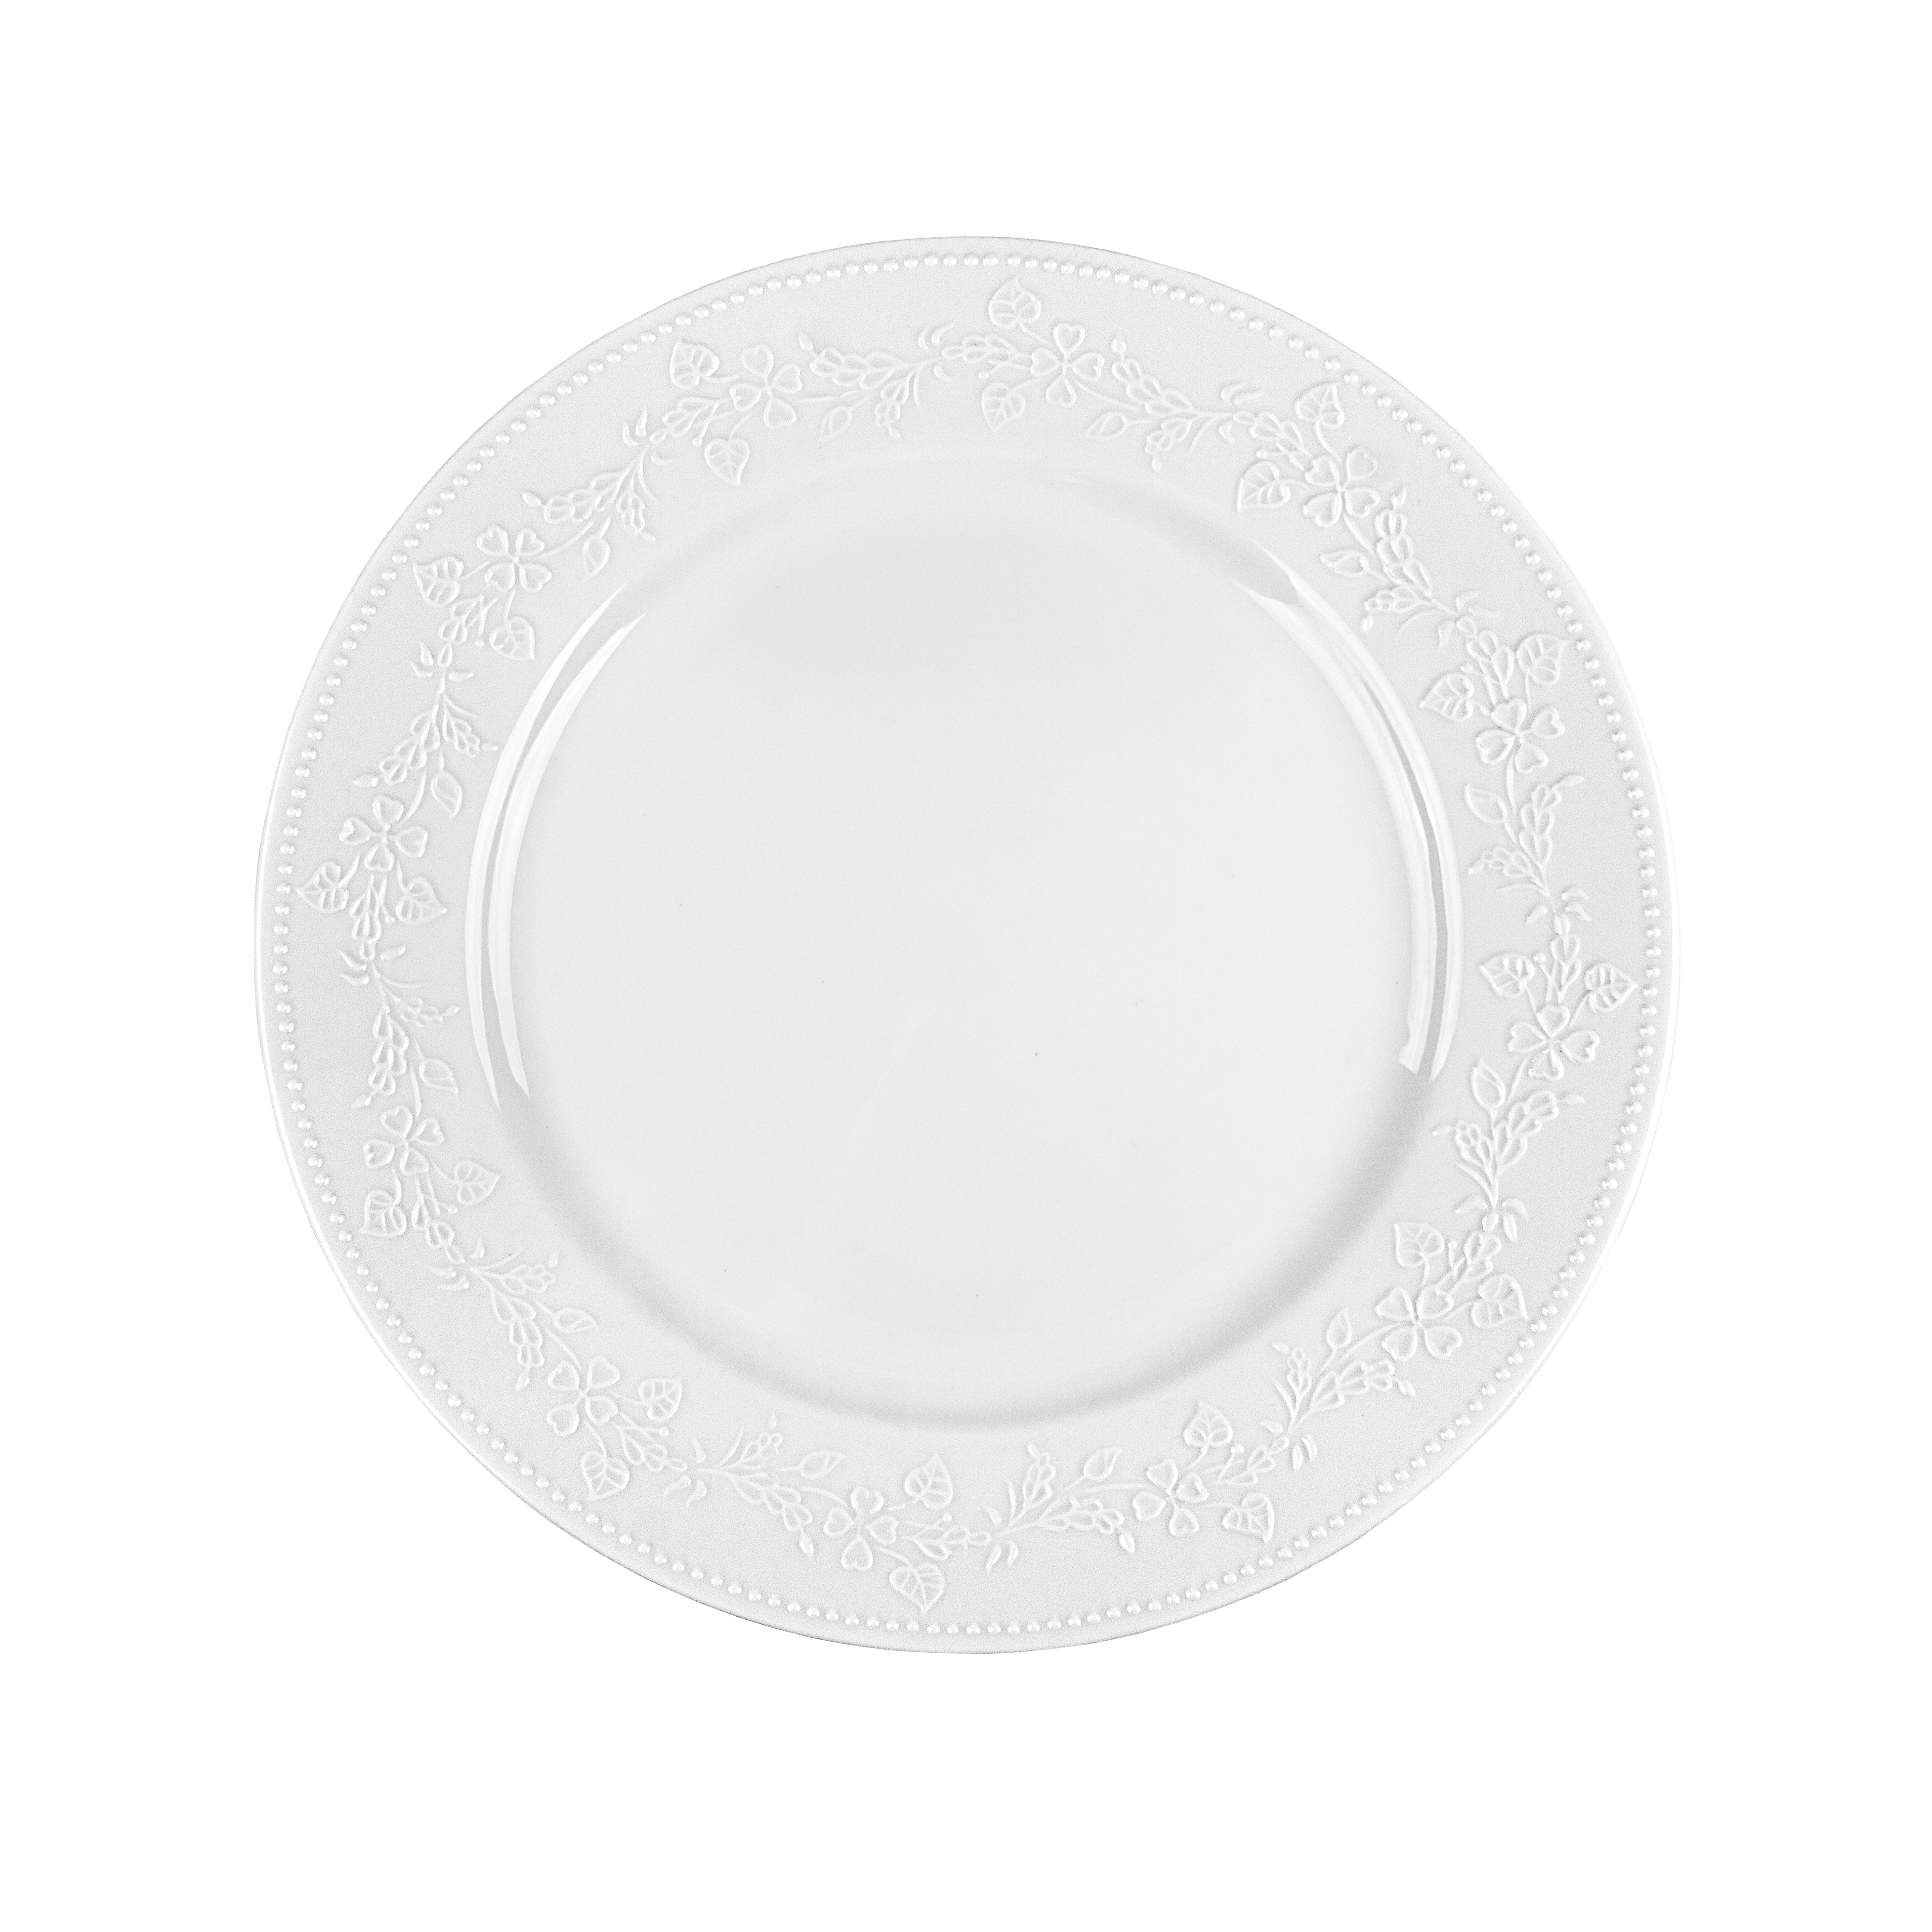 Πιάτο Ρηχό Πορσελάνης Λευκό Kea Oriana Ferelli 27εκ. PRPW350001 (Σετ 6 Τεμάχια) (Υλικό: Πορσελάνη, Χρώμα: Λευκό, Μέγεθος: Μεμονωμένο) – Oriana Ferelli® – PRPW350001